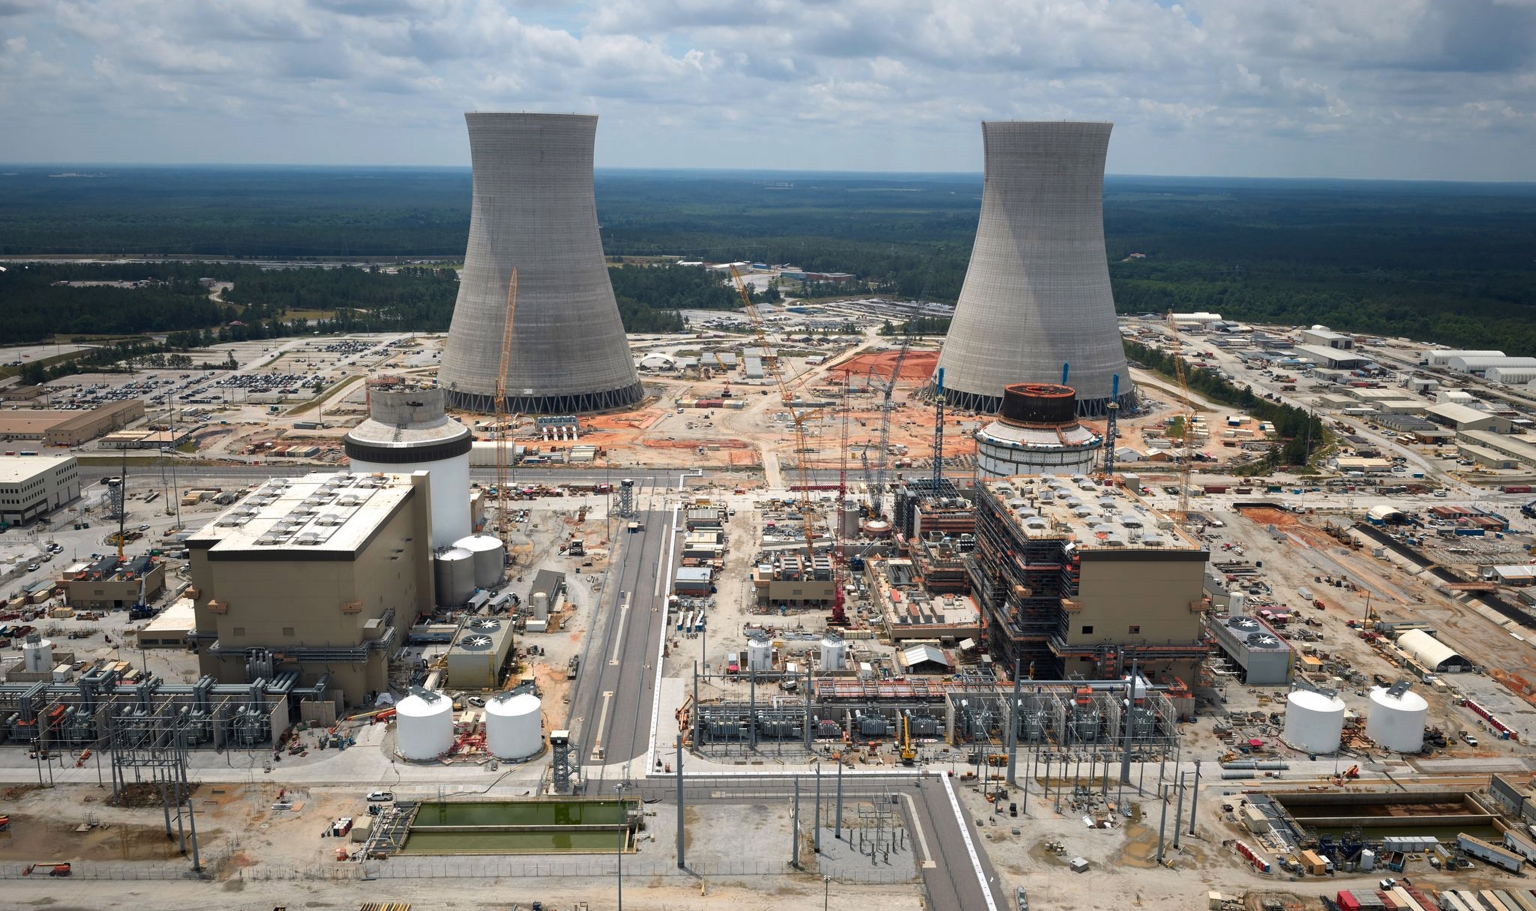 Die Oglethorpe Power – eine Mitbesitzerin der in Bau stehenden Kernkraftwerkseinheiten Vogtle-3 (links) und Vogtle-4 in den USA – hat Budgetreserven eingeplant, um für eventuelle Verzögerungen bei der Inbetriebnahme gewappnet zu sein.